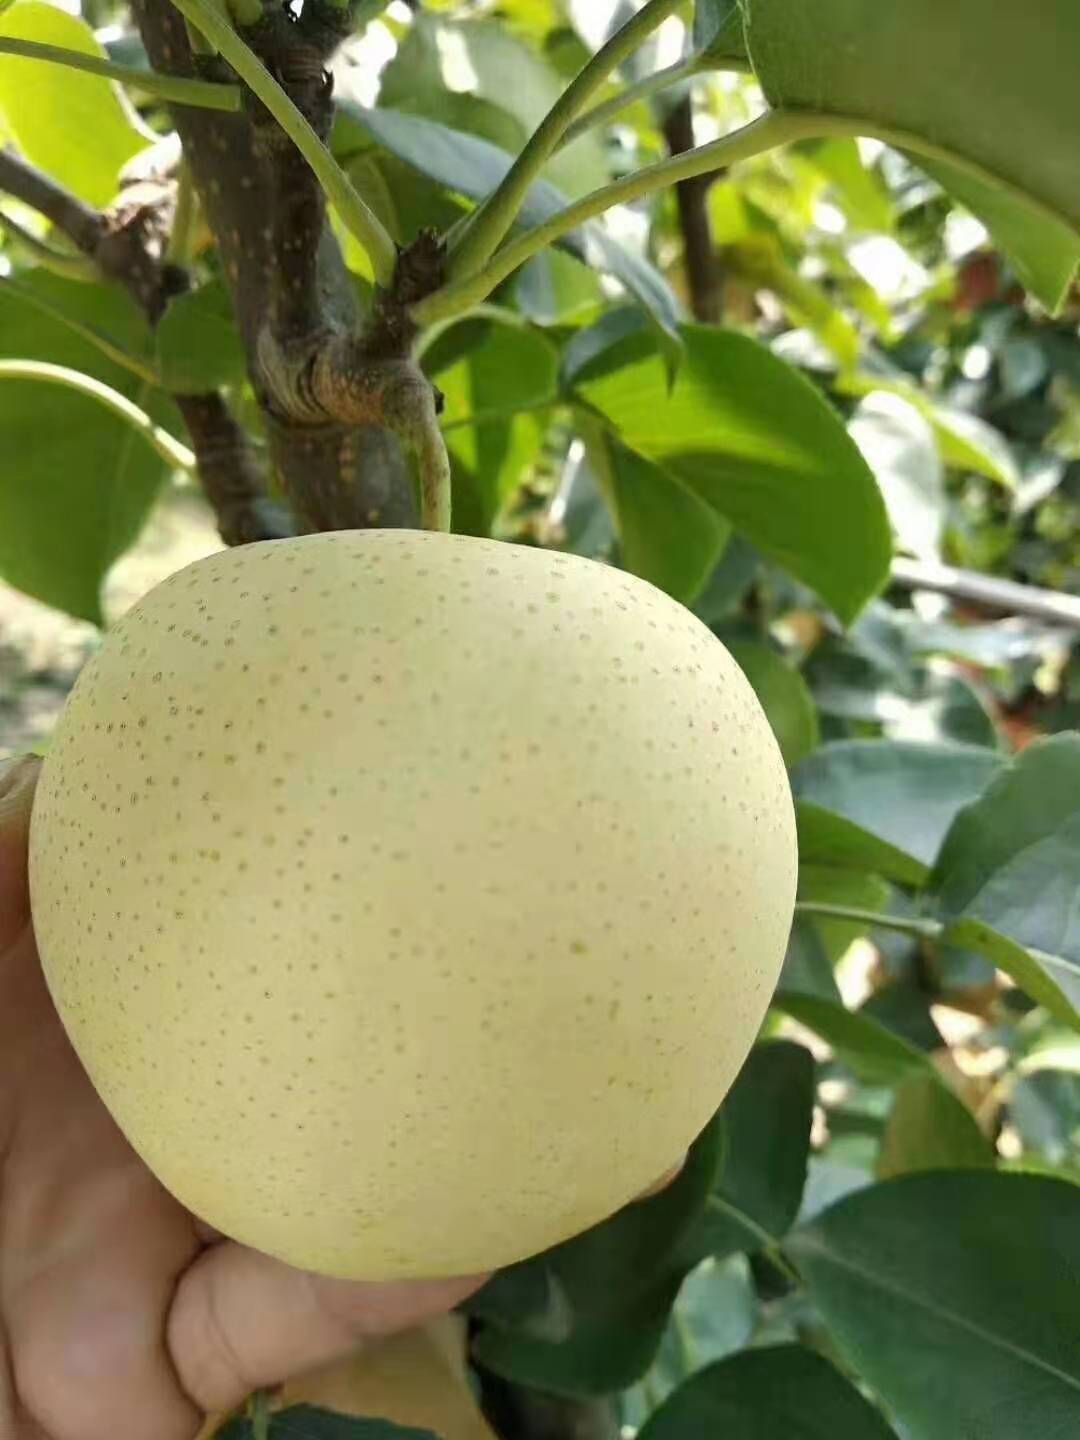 黄金梨,梨的一个品种,落叶乔木,由韩国园艺试验场罗州支场于二十世纪